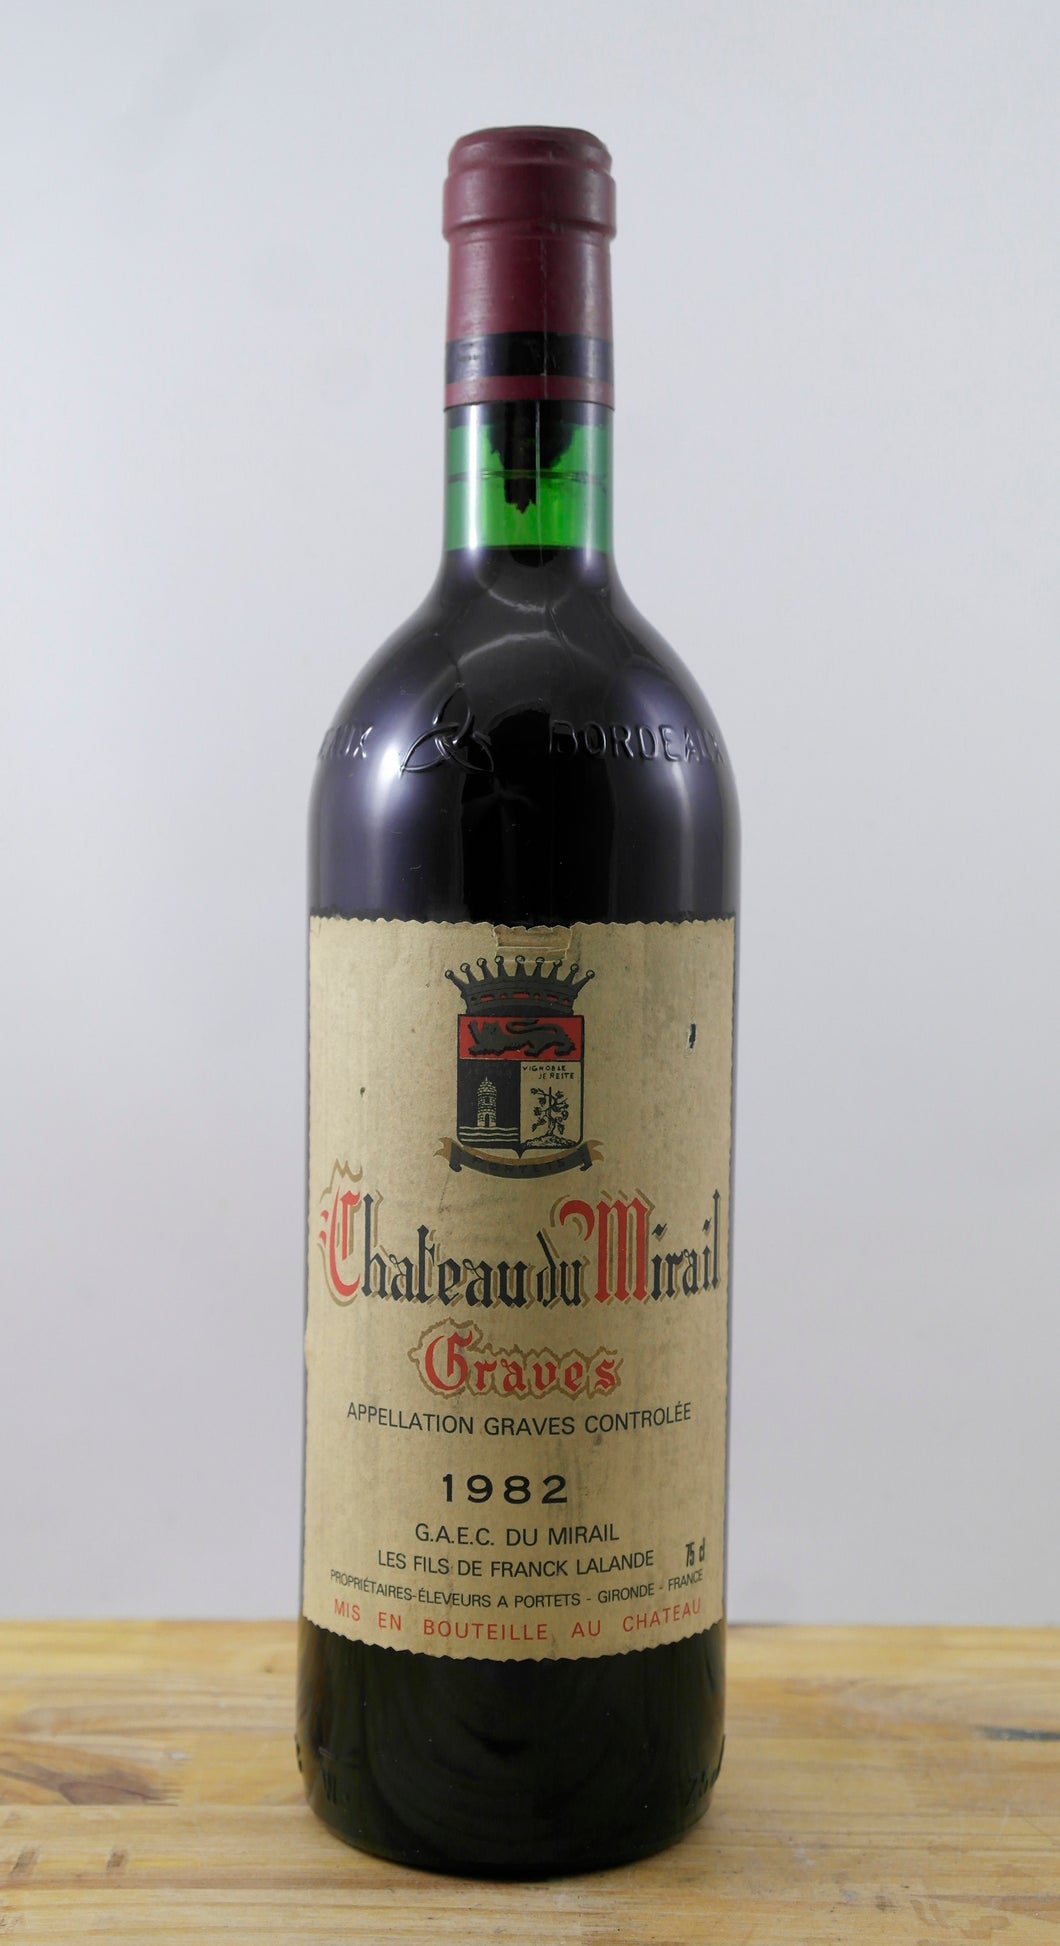 Chateau du Mirail Vin 1982